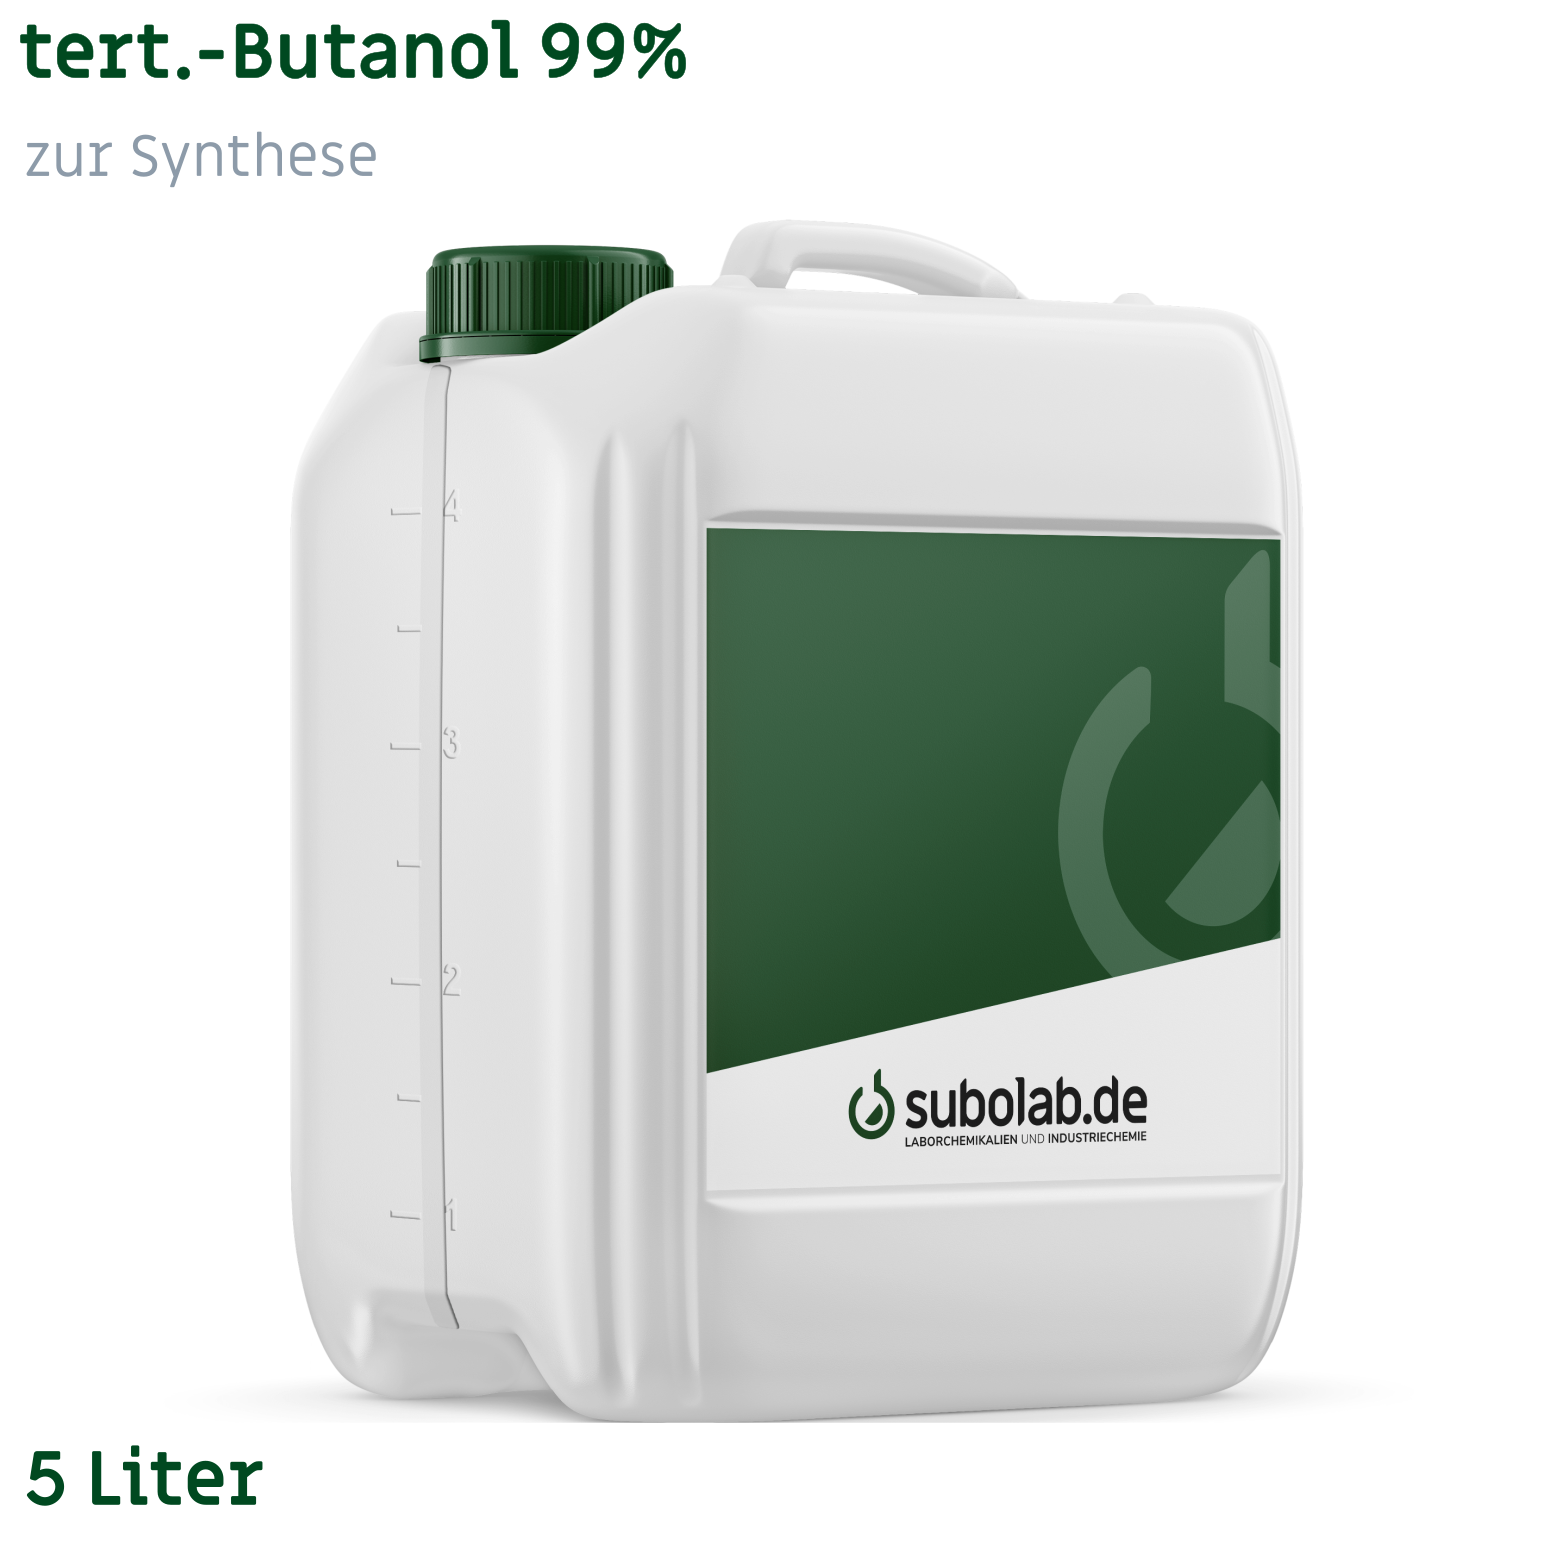 Bild von tert.-Butanol 99% zur Synthese (5 Liter)